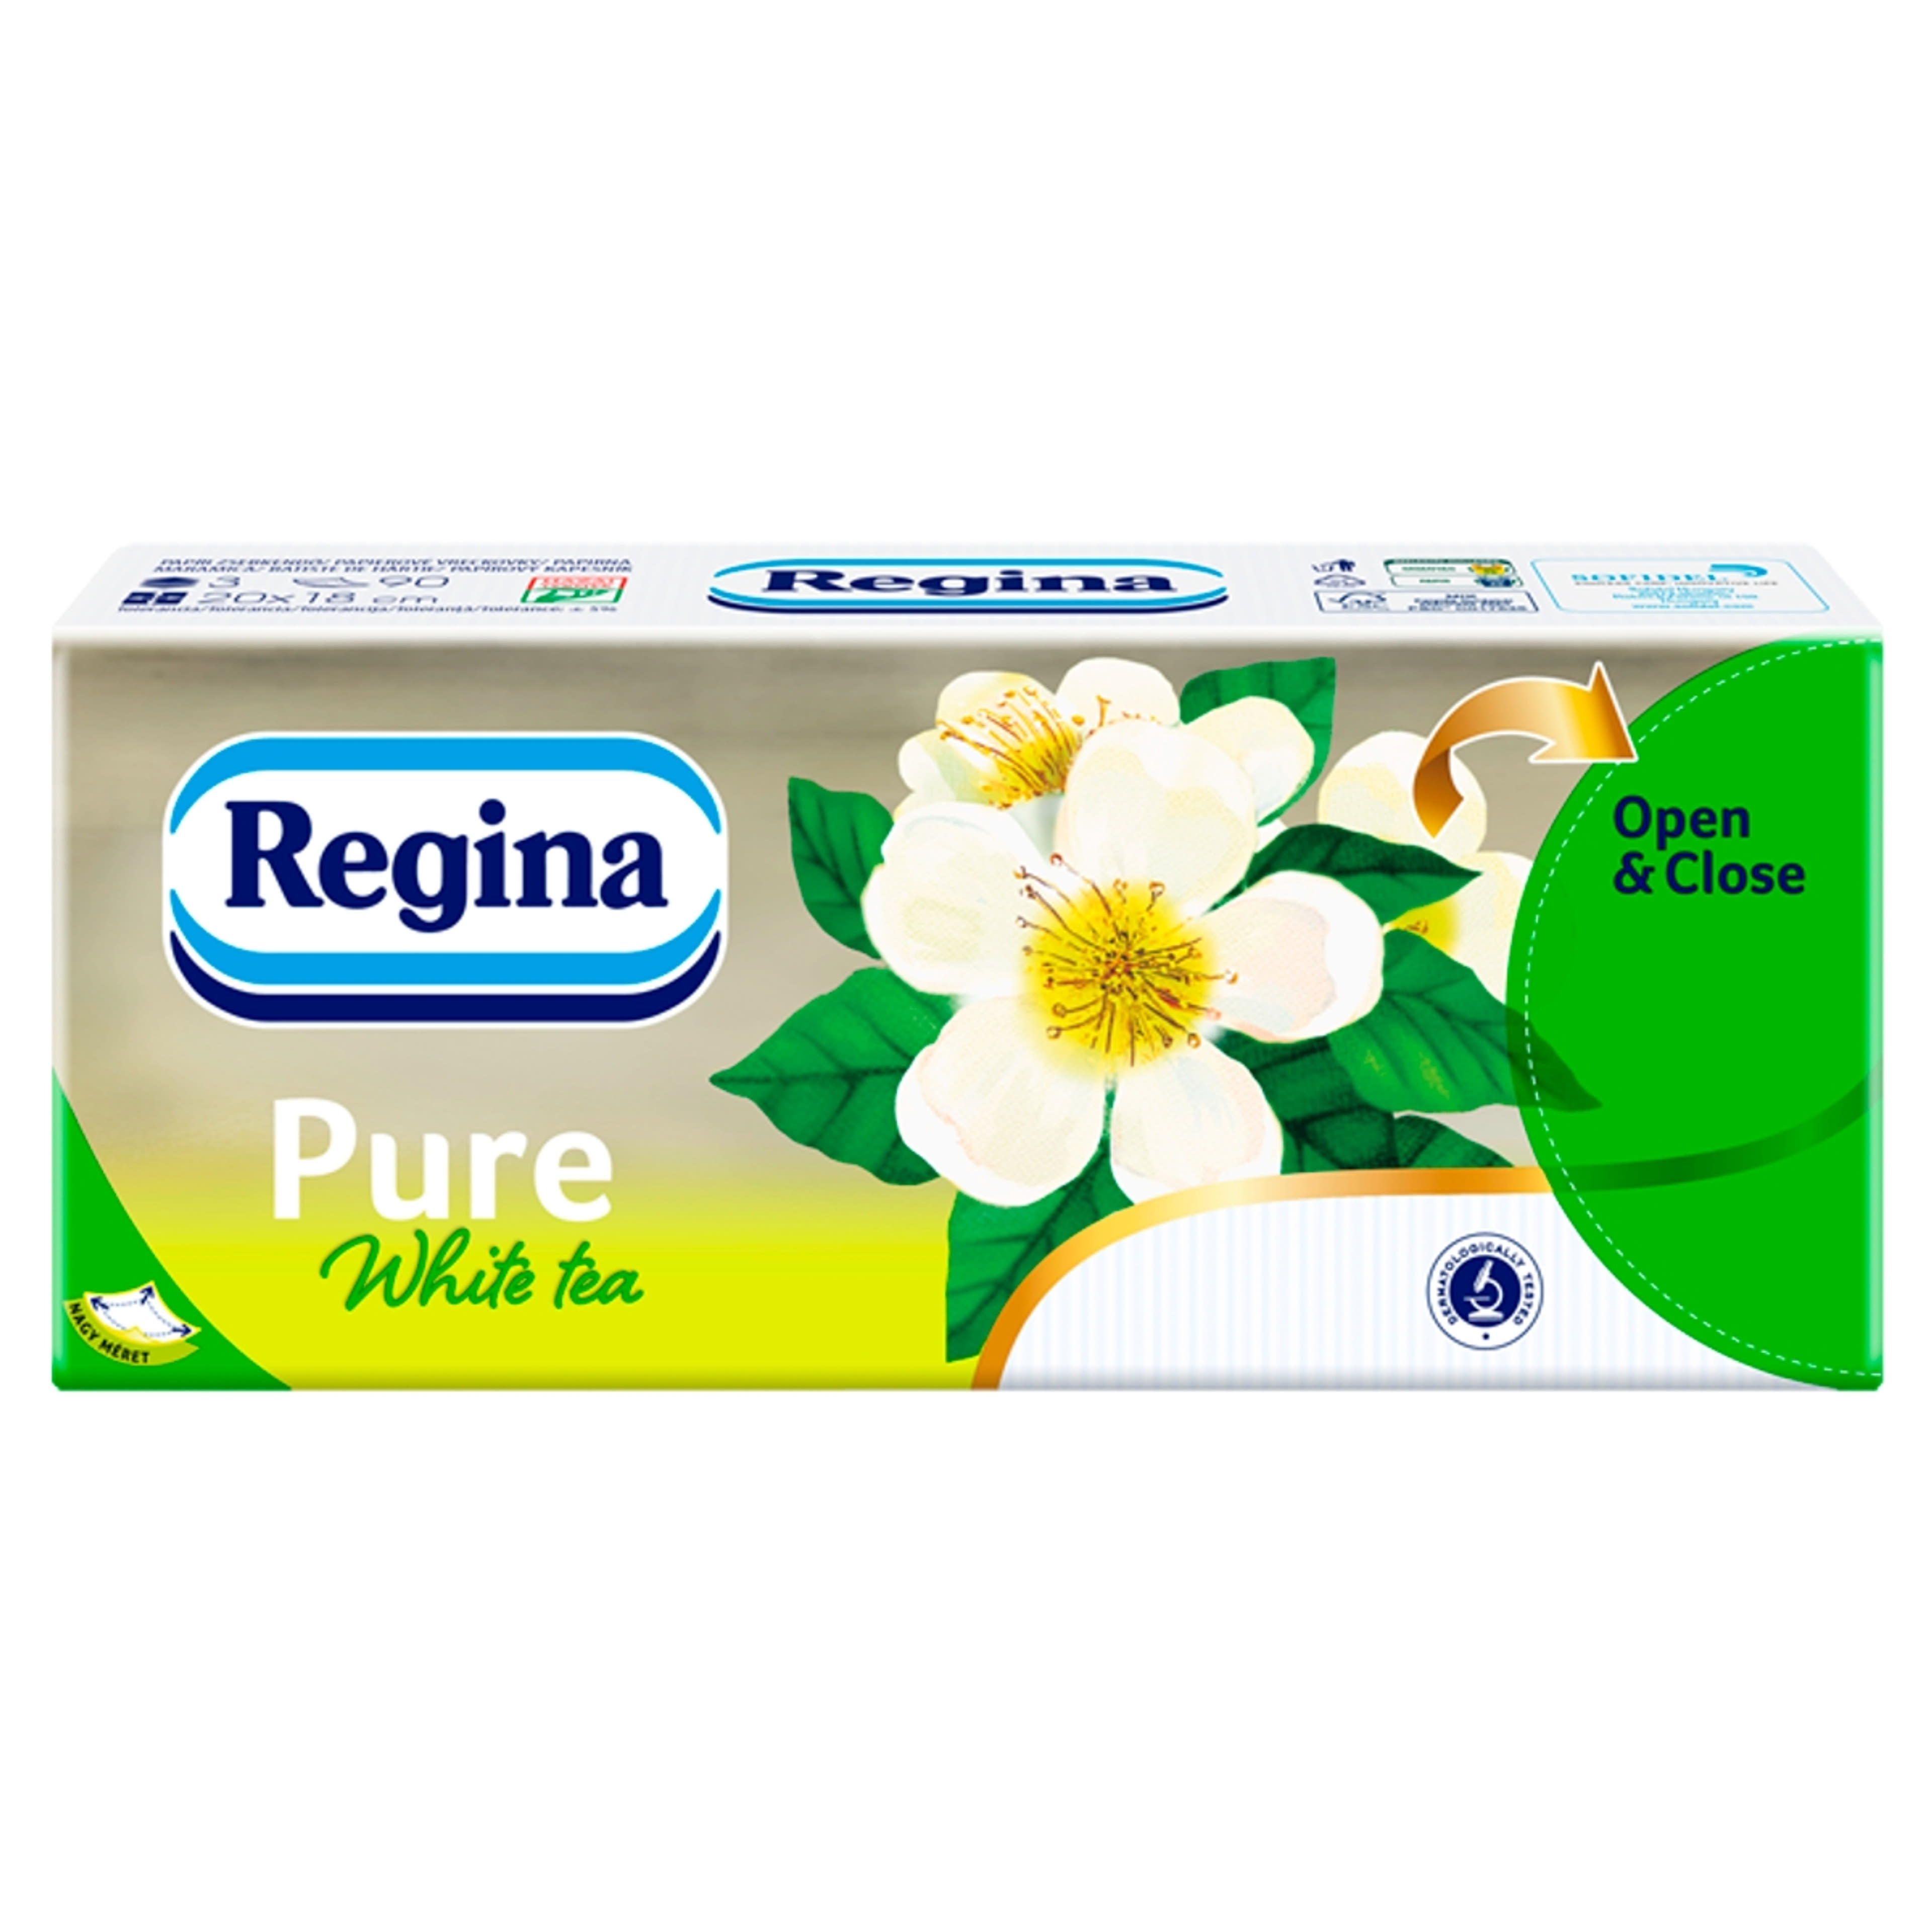 Regina papírzsebkendő pure white tea 3 rétegű - 1 db-2